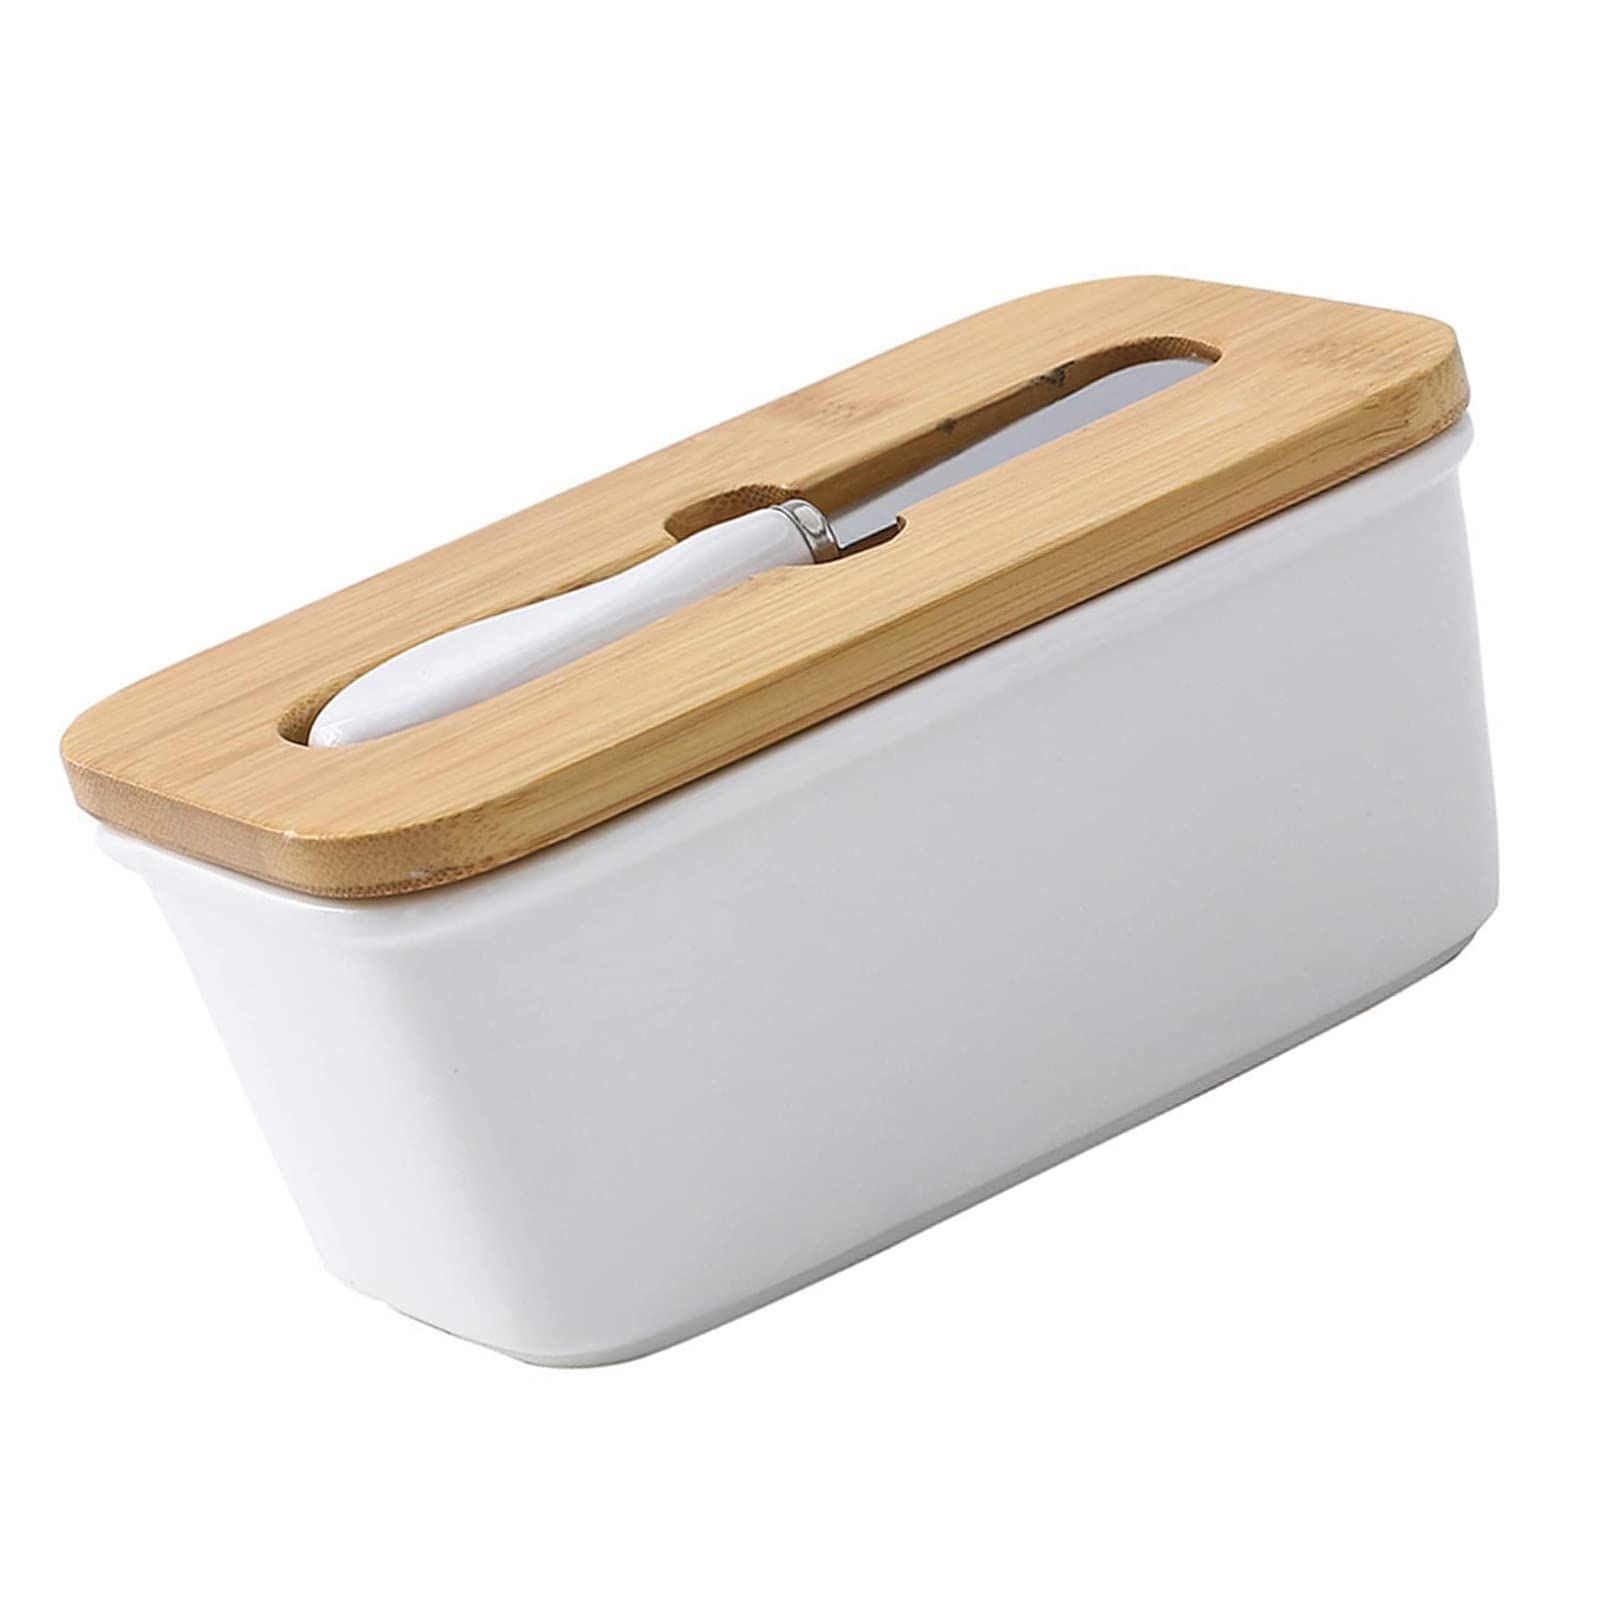 バターケース カッター付き 密封 使用便利 洗い簡単 冷蔵庫保存 450g用 木製蓋付き 食器用バター 収納用